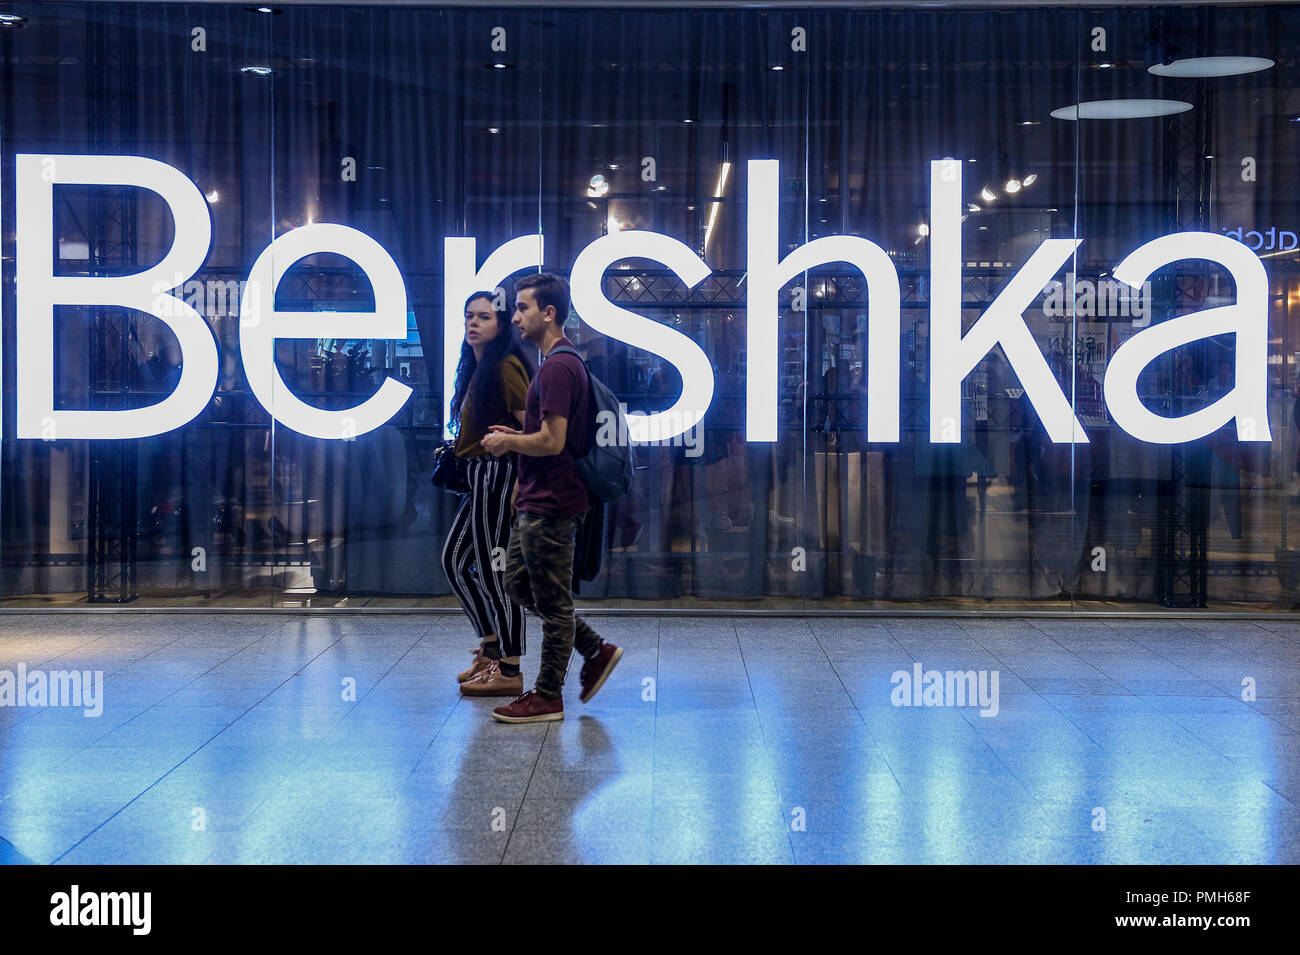 Septiembre 18, 2018 - Cracovia, Polonia - Una pareja visto caminando por  una tienda Bershka. (Crédito de la Imagen: © Omar Marques/sopa de imágenes  a través de Zuma Wire Fotografía de stock - Alamy